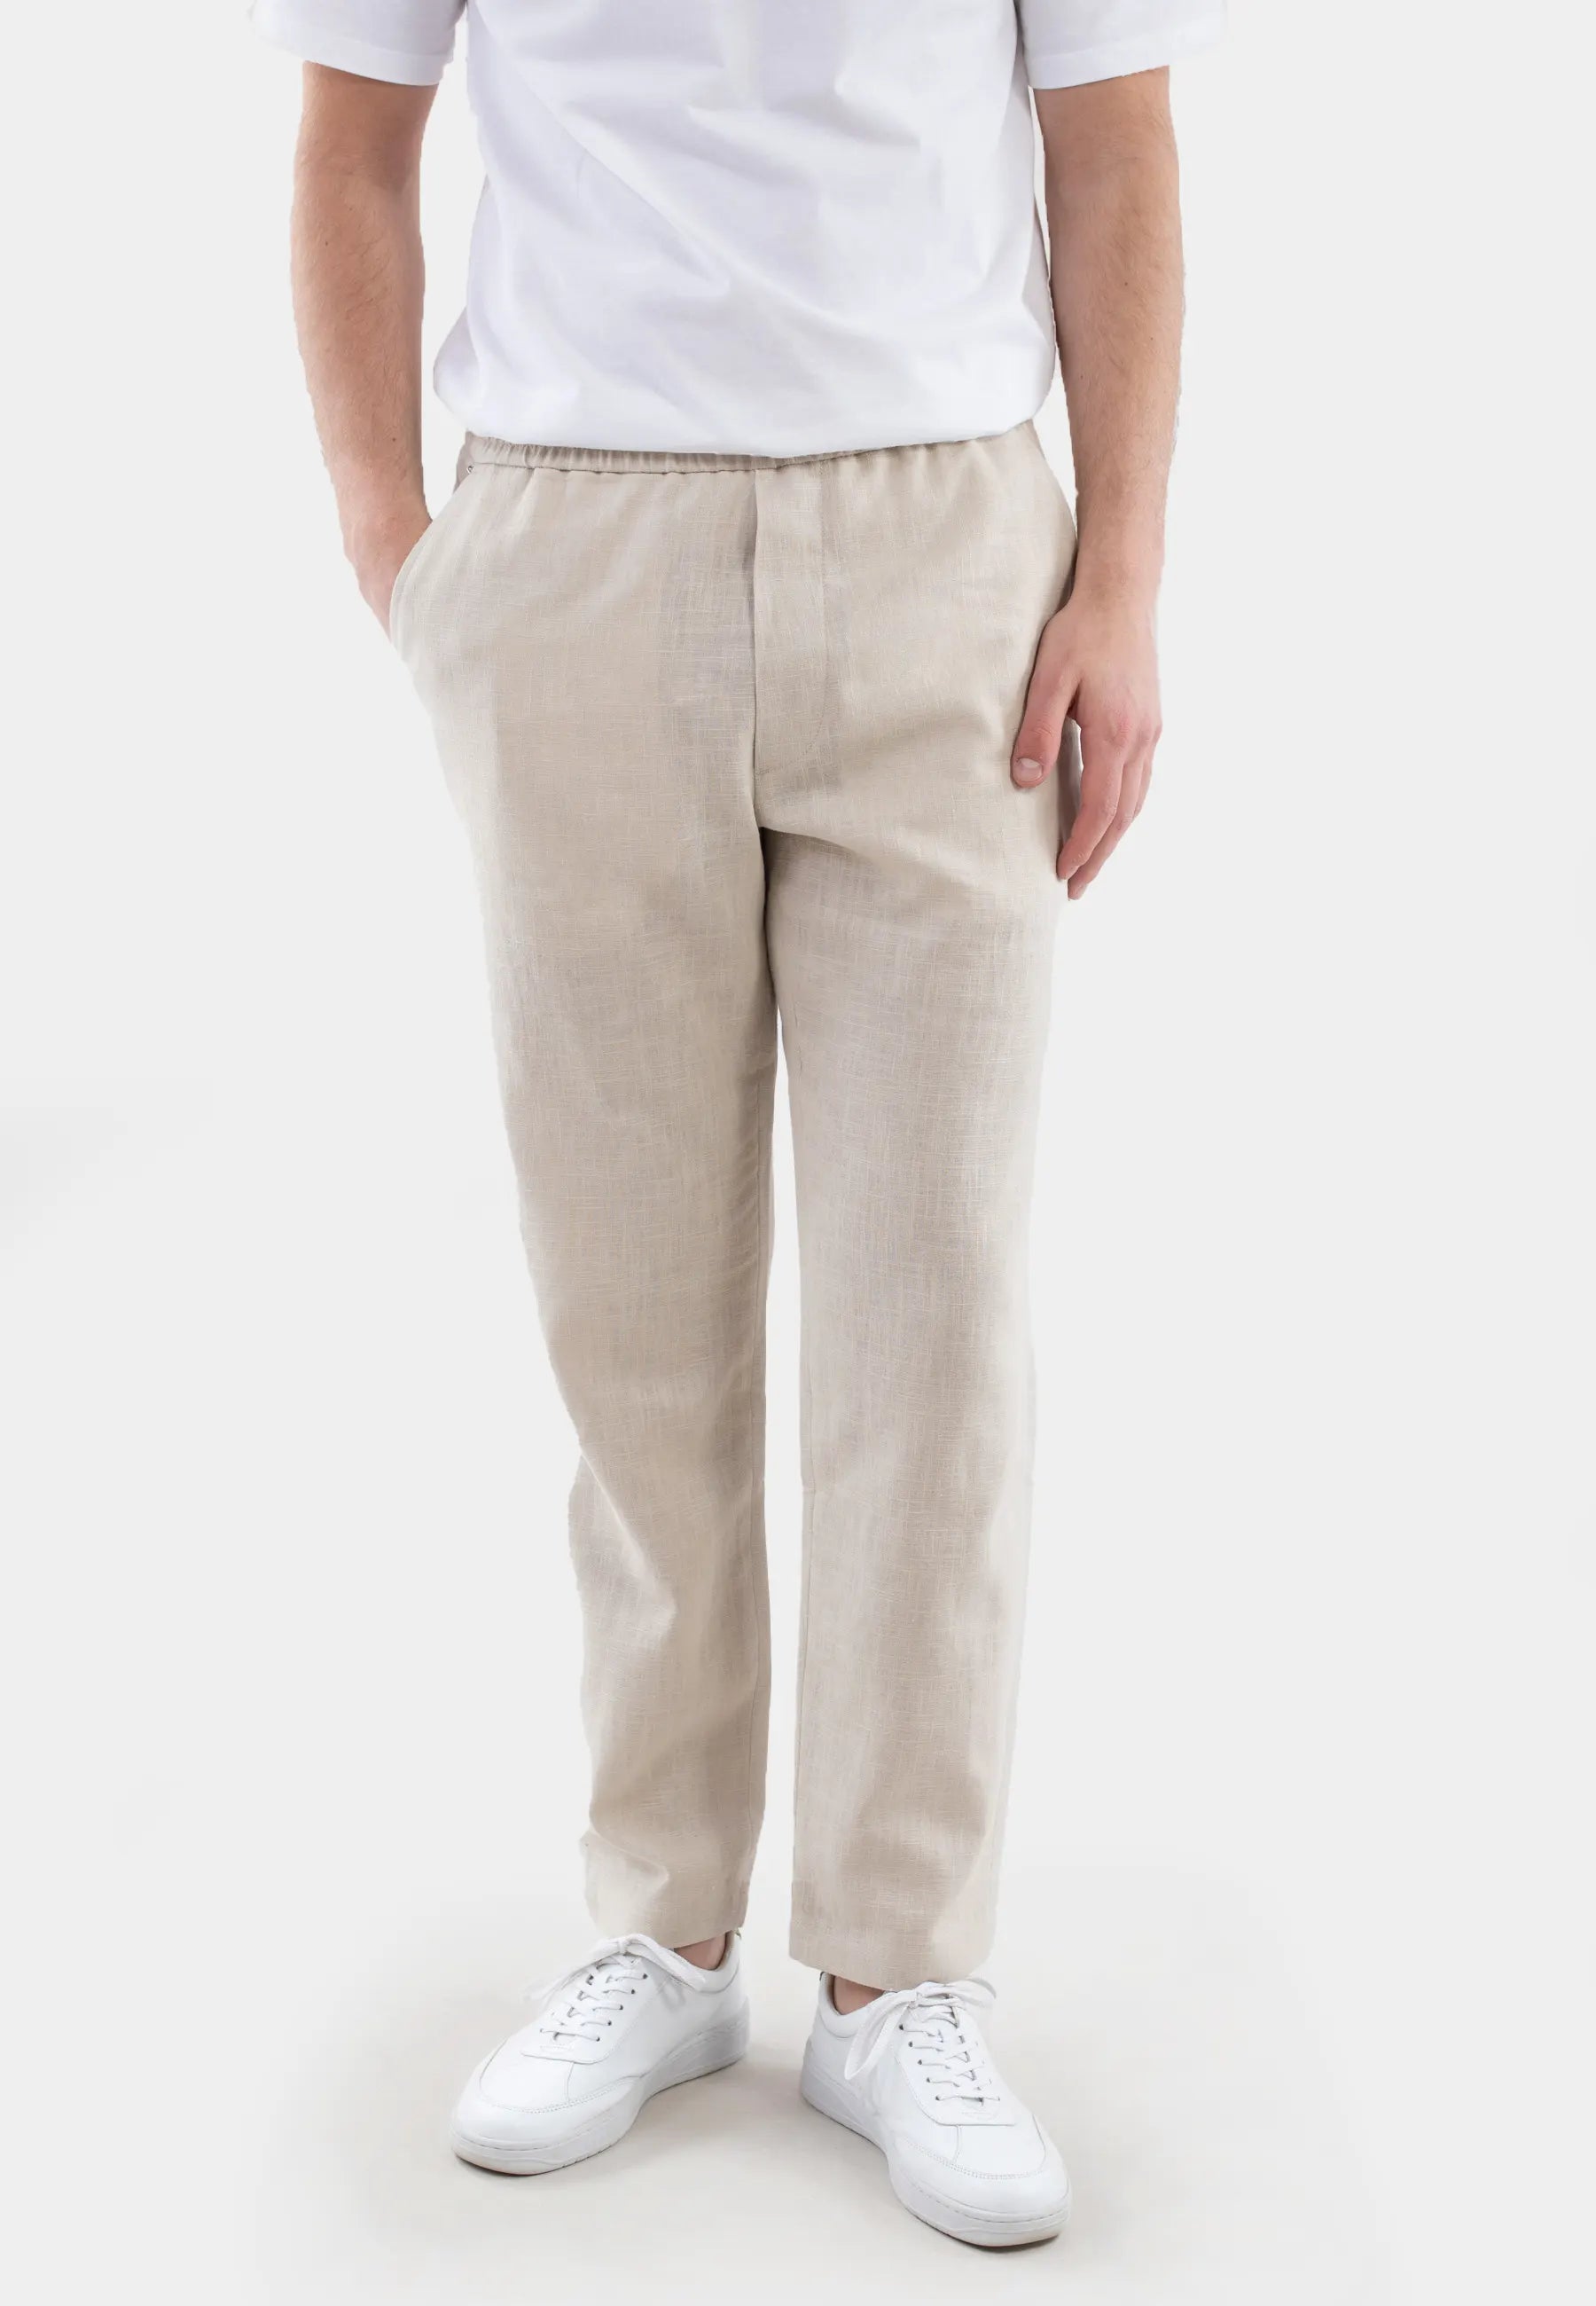 Harlow linen trousers - Sunburst beige